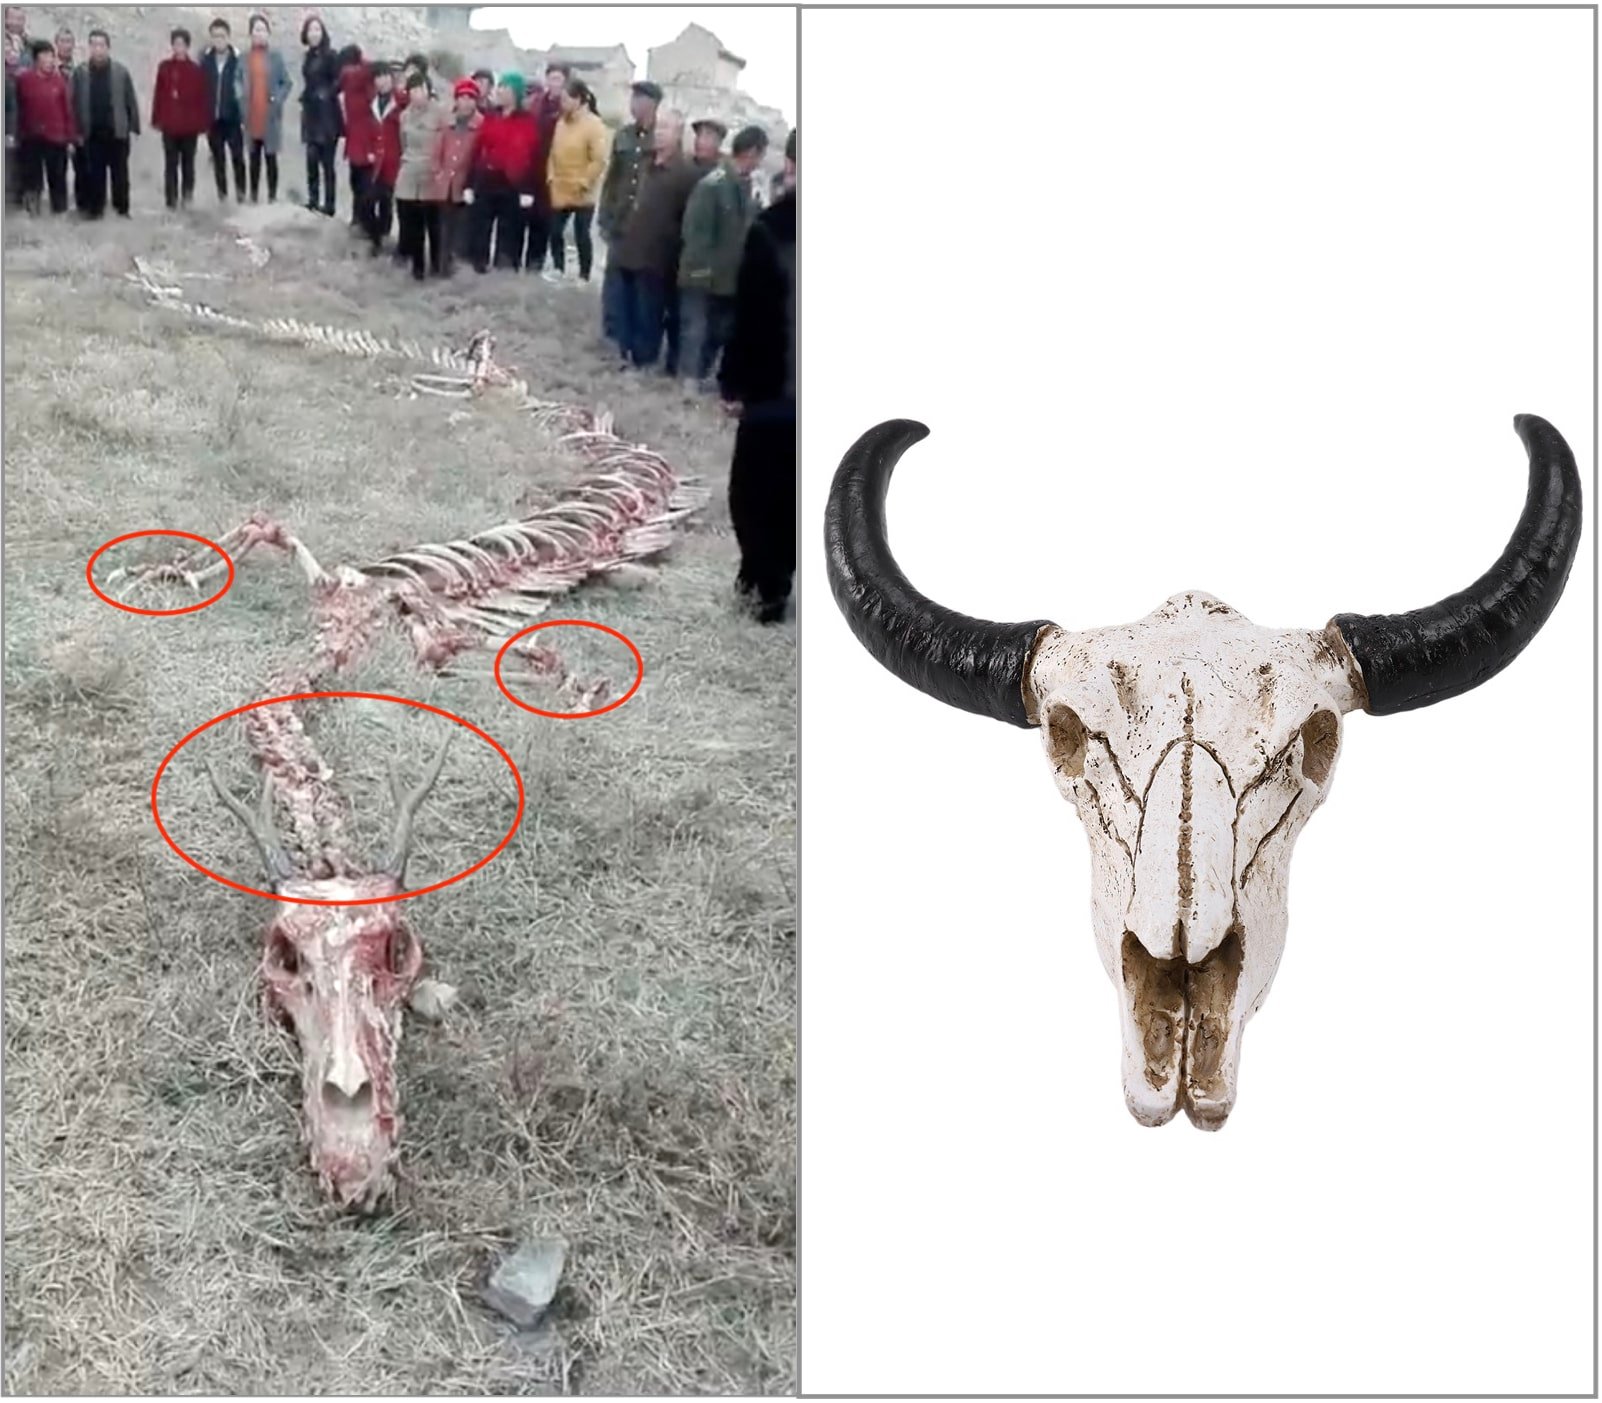 Trái: Bộ xương được cho là của Rồng xuất hiện tại Trương Gia Khẩu, tháng 10/2017, chân có móng vuốt sắc như vuốt chim ưng và sừng như sừng hươu. Phải: xương đầu của một con bò.